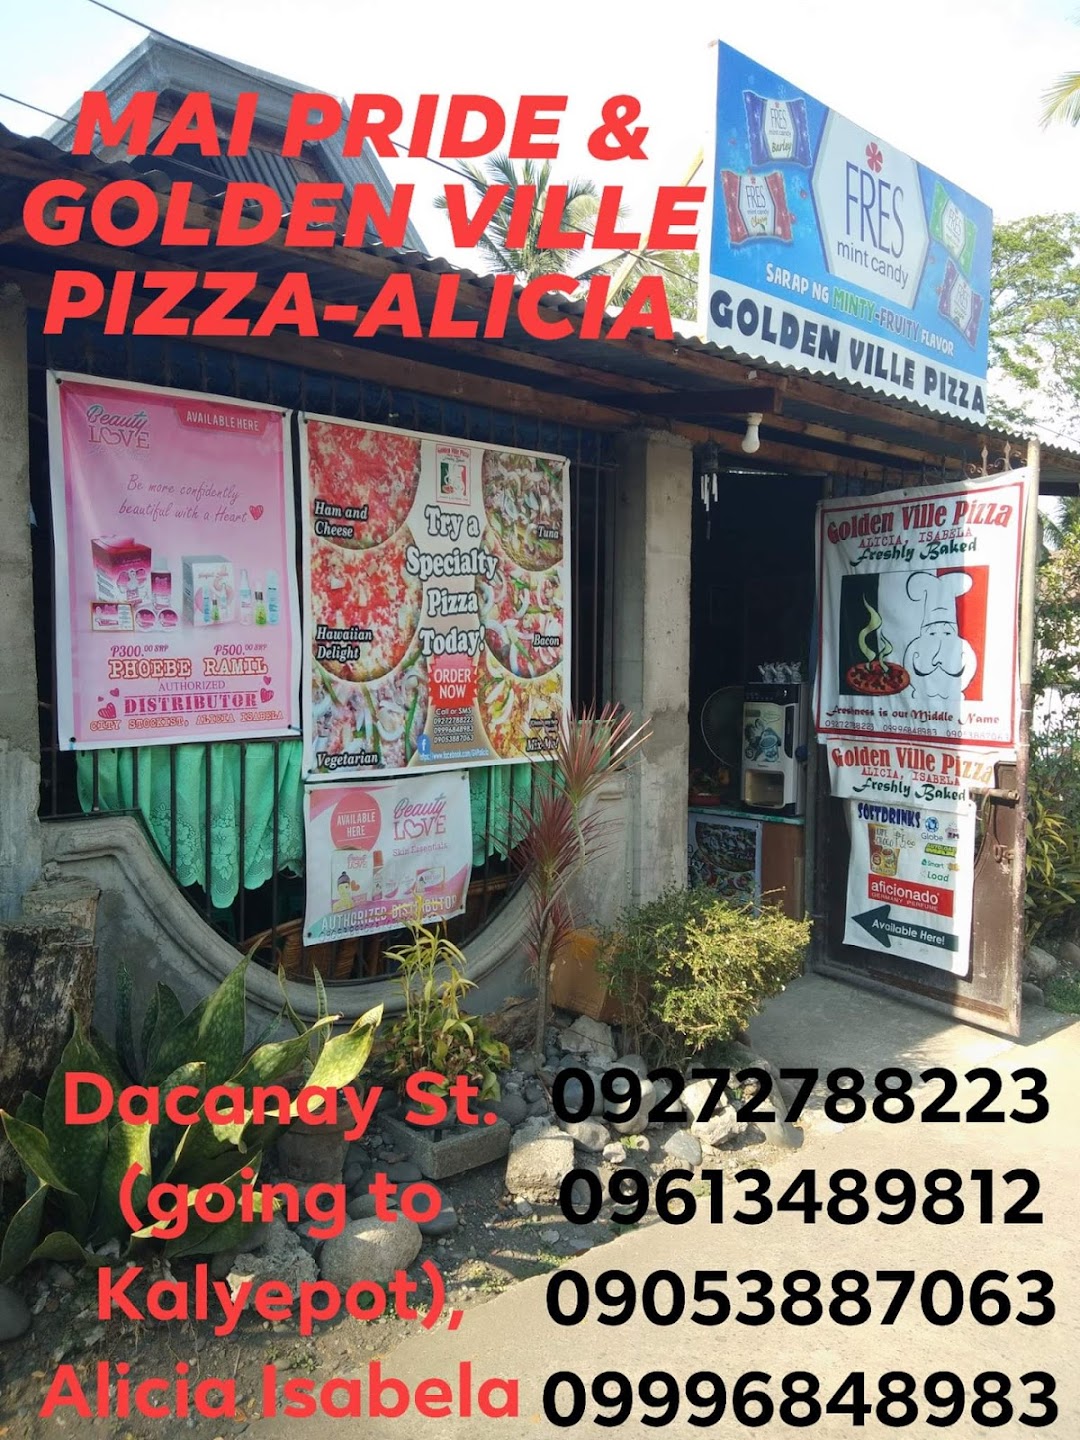 Golden Ville Pizza - Alicia